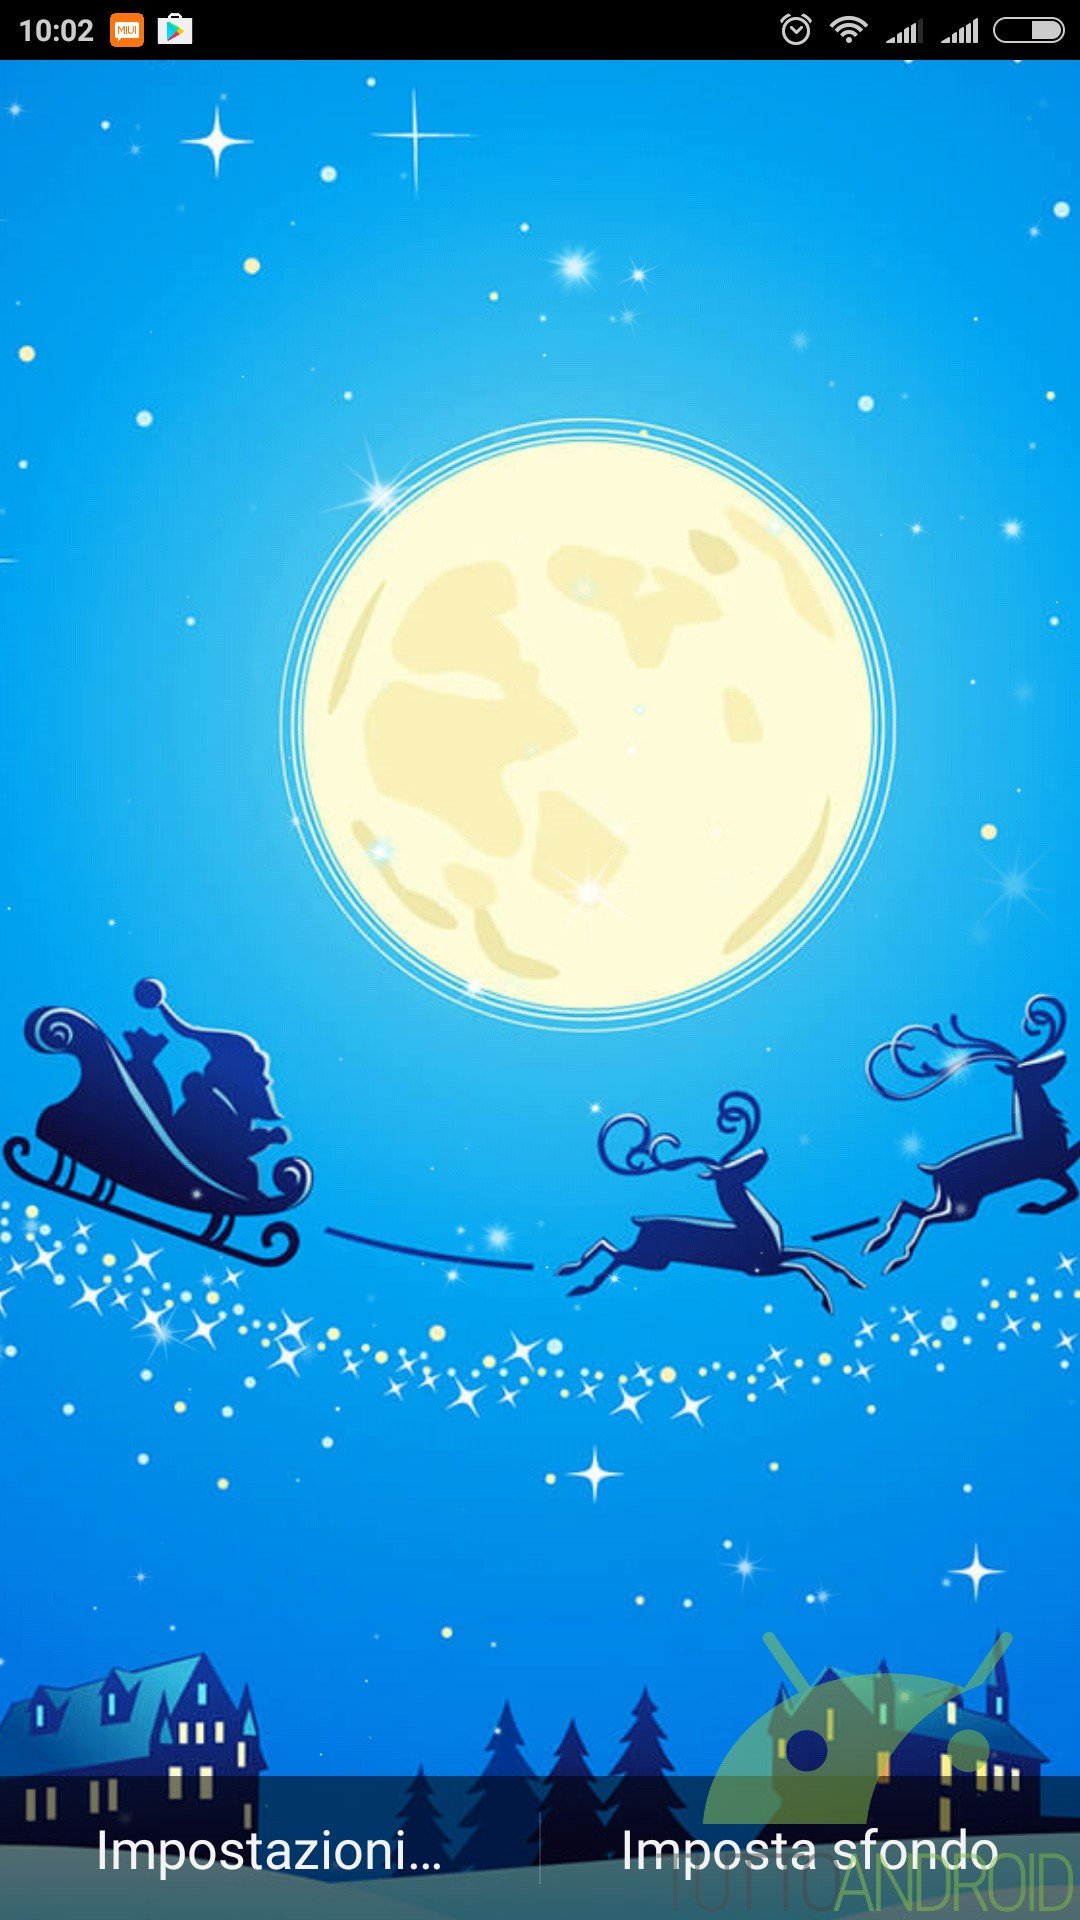 Sfondi Natalizi Animati Per Android.Notte Di Natale Sfondi Animati Offre Live Wallpaper Di Qualita Per Le Prossime Festivita